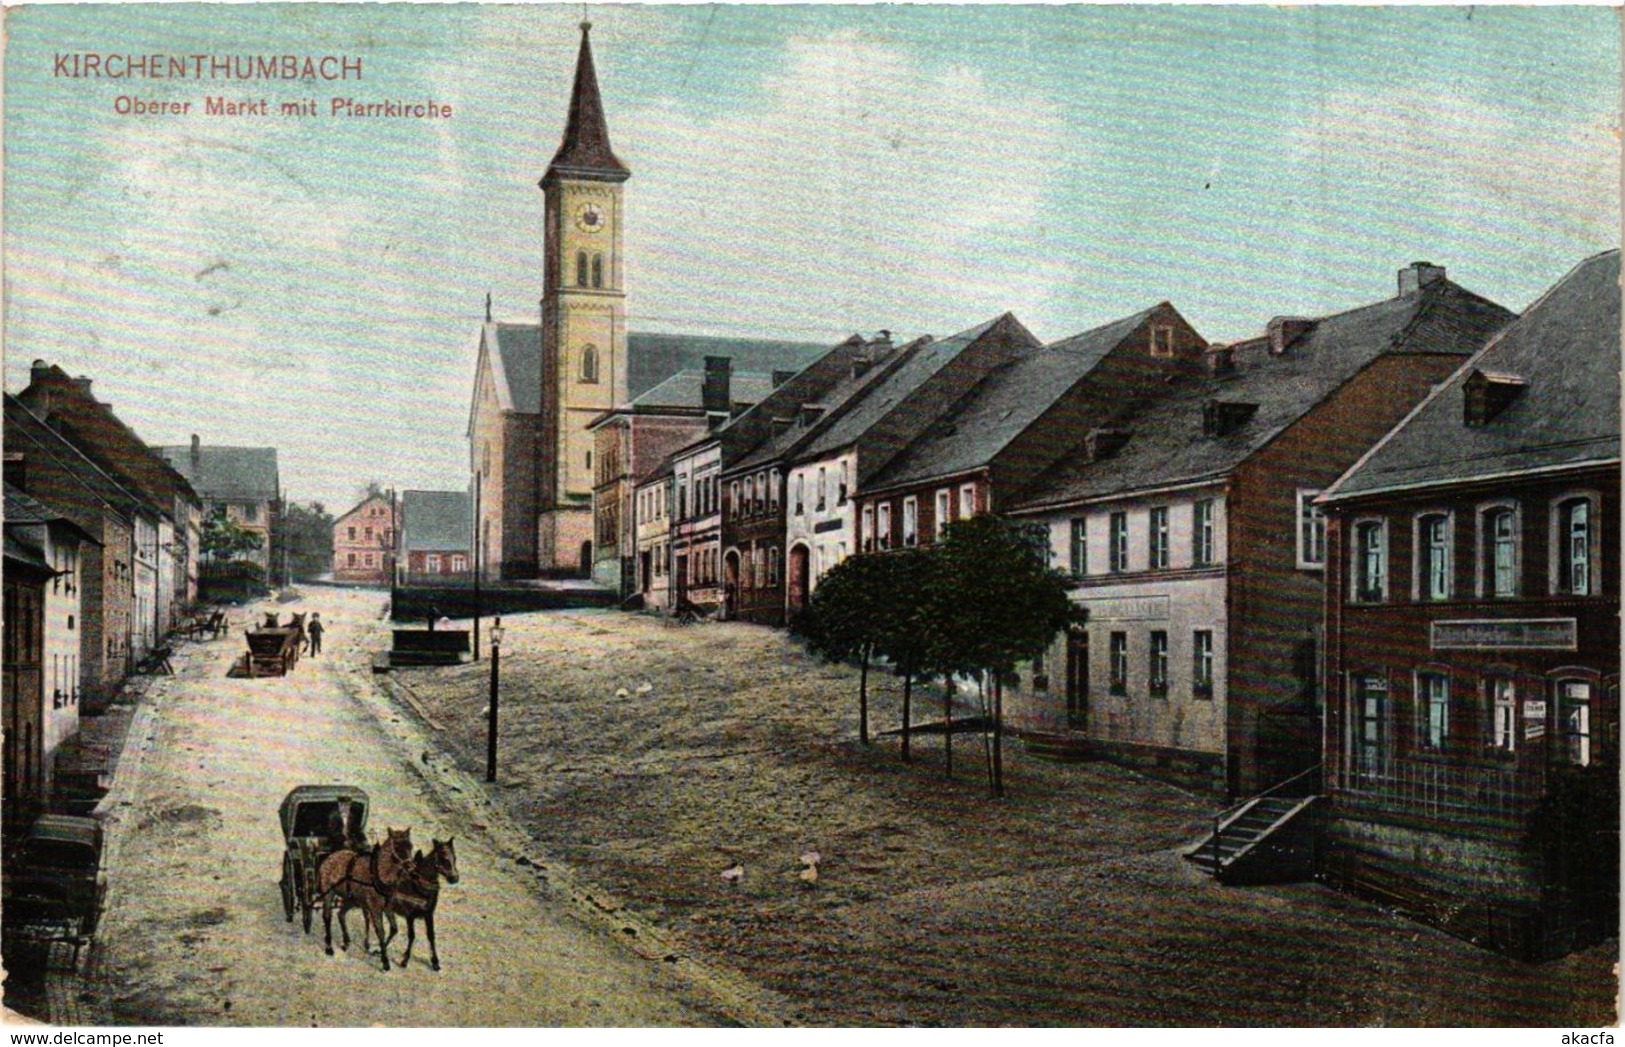 CPA AK Kirchenthumbach - Oberer Markt Mit Pfarrkirche GERMANY (919411) - Pegnitz